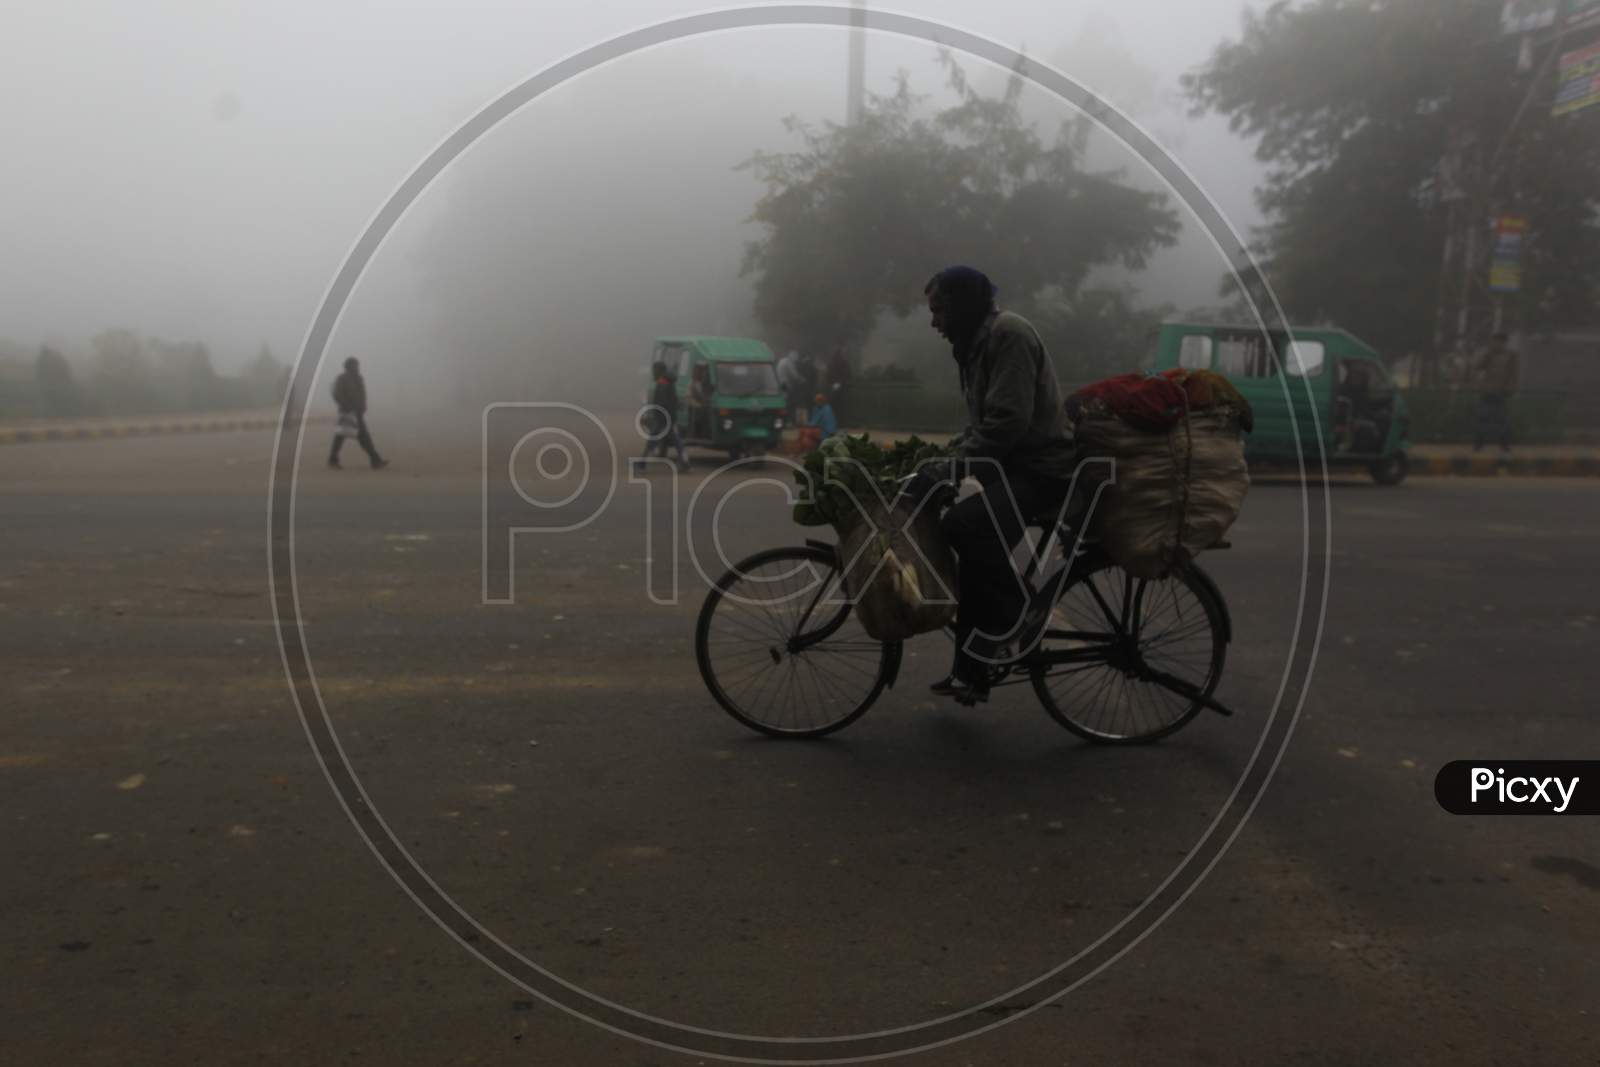 People in Foggy Roads in Winter Mornings